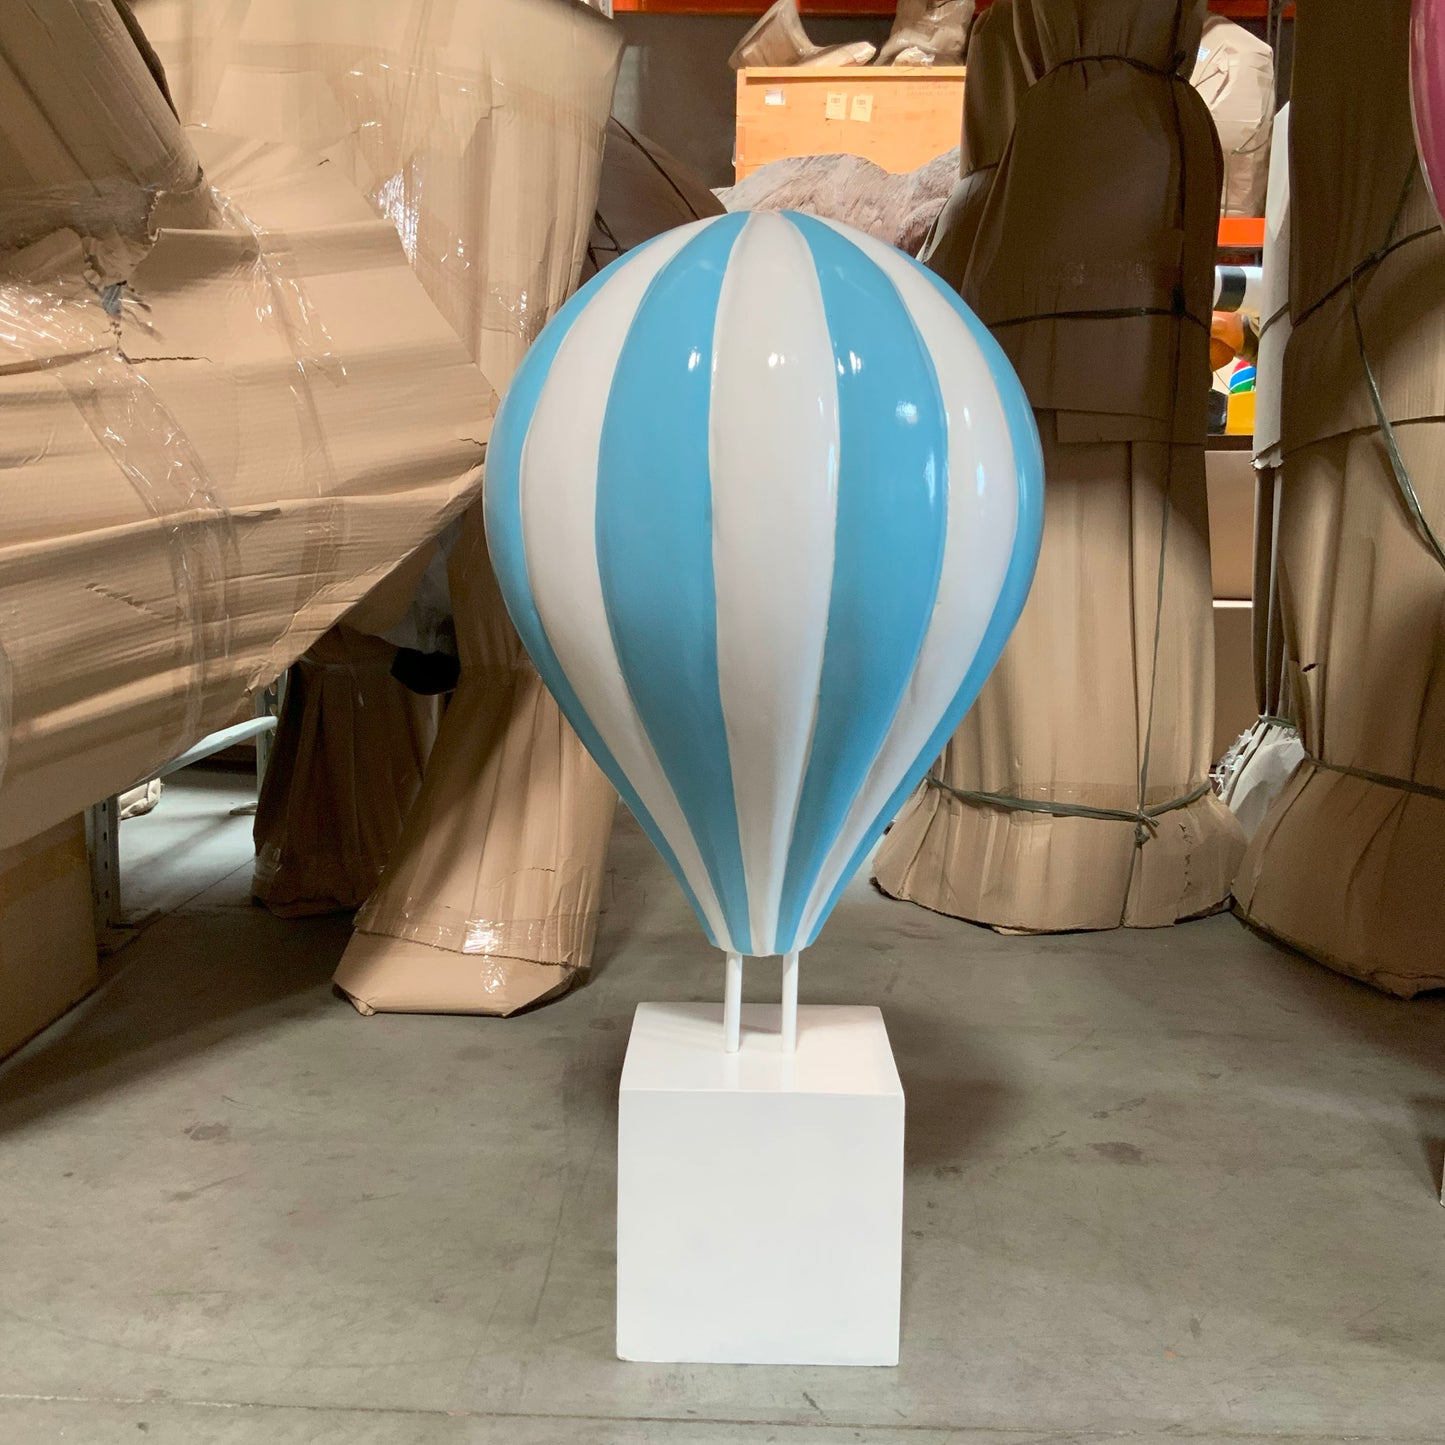 Small Blue Hot Air Balloon Statue